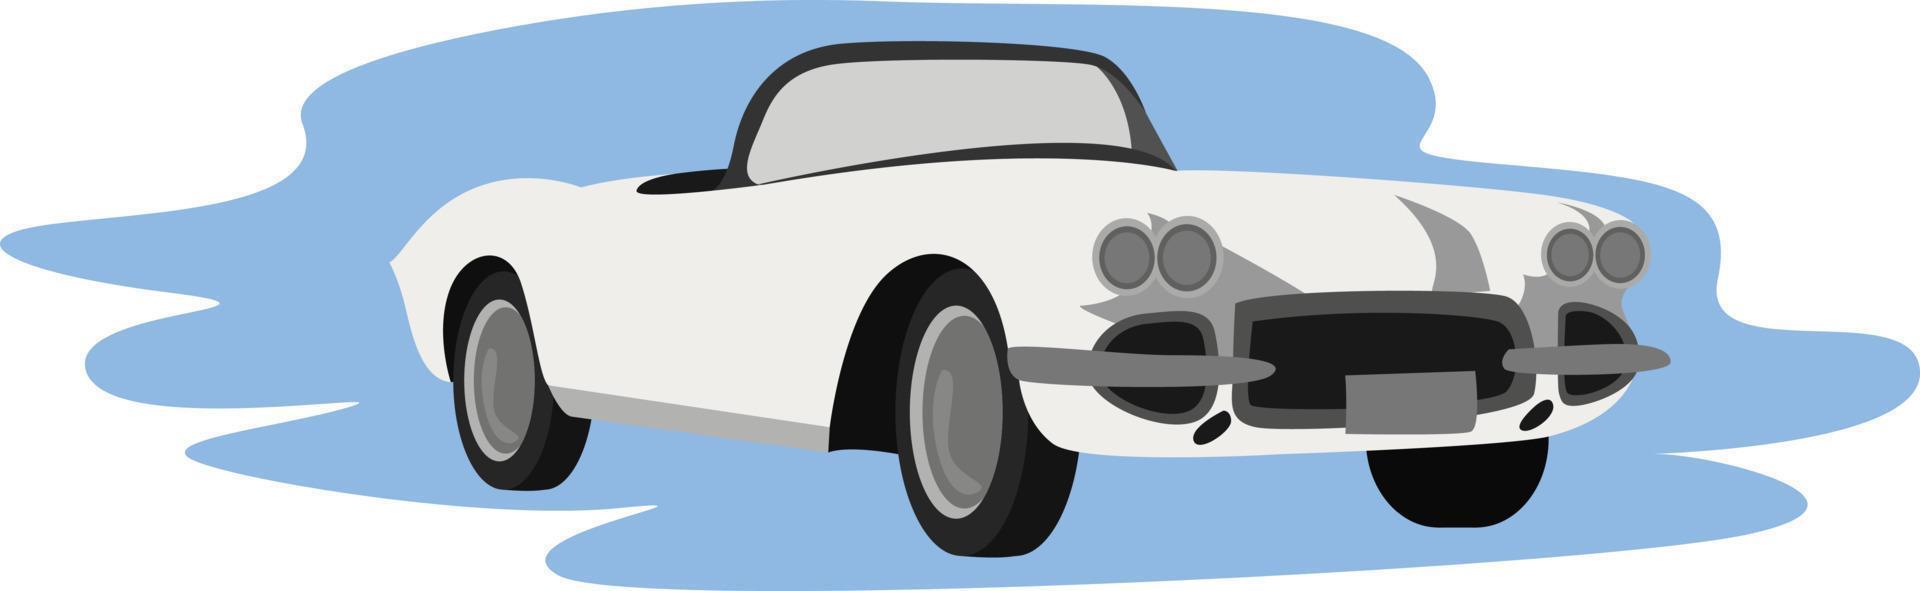 coche retro blanco, ilustración, vector sobre fondo blanco